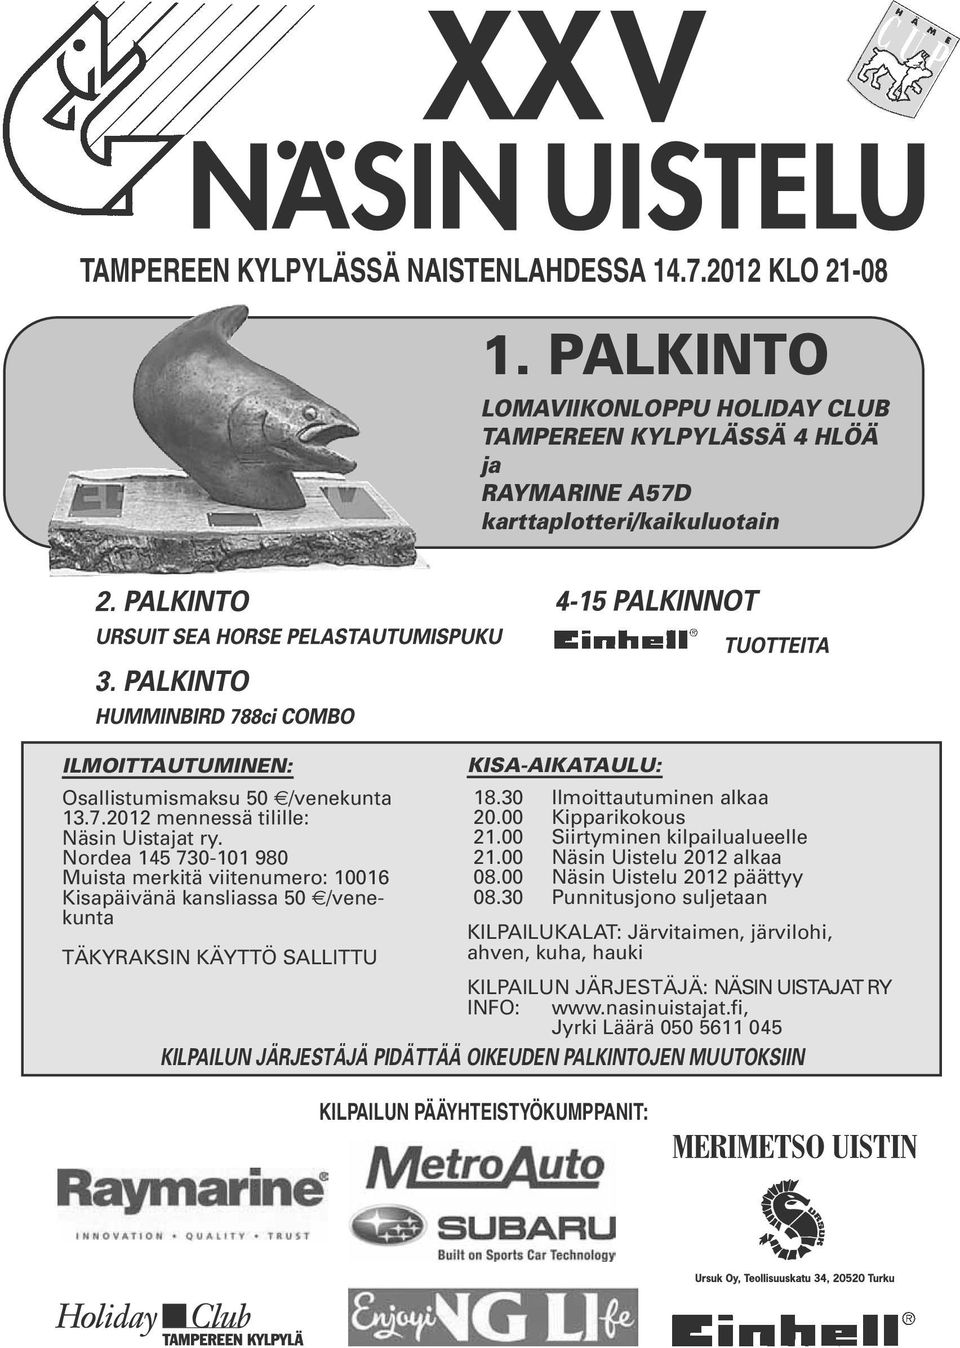 30 Ilmoittautuminen alkaa 13.7.2012 mennessä tilille: 20.00 Kipparikokous Näsin Uistajat ry. 21.00 Siirtyminen kilpailualueelle Nordea 145 730-101 980 21.